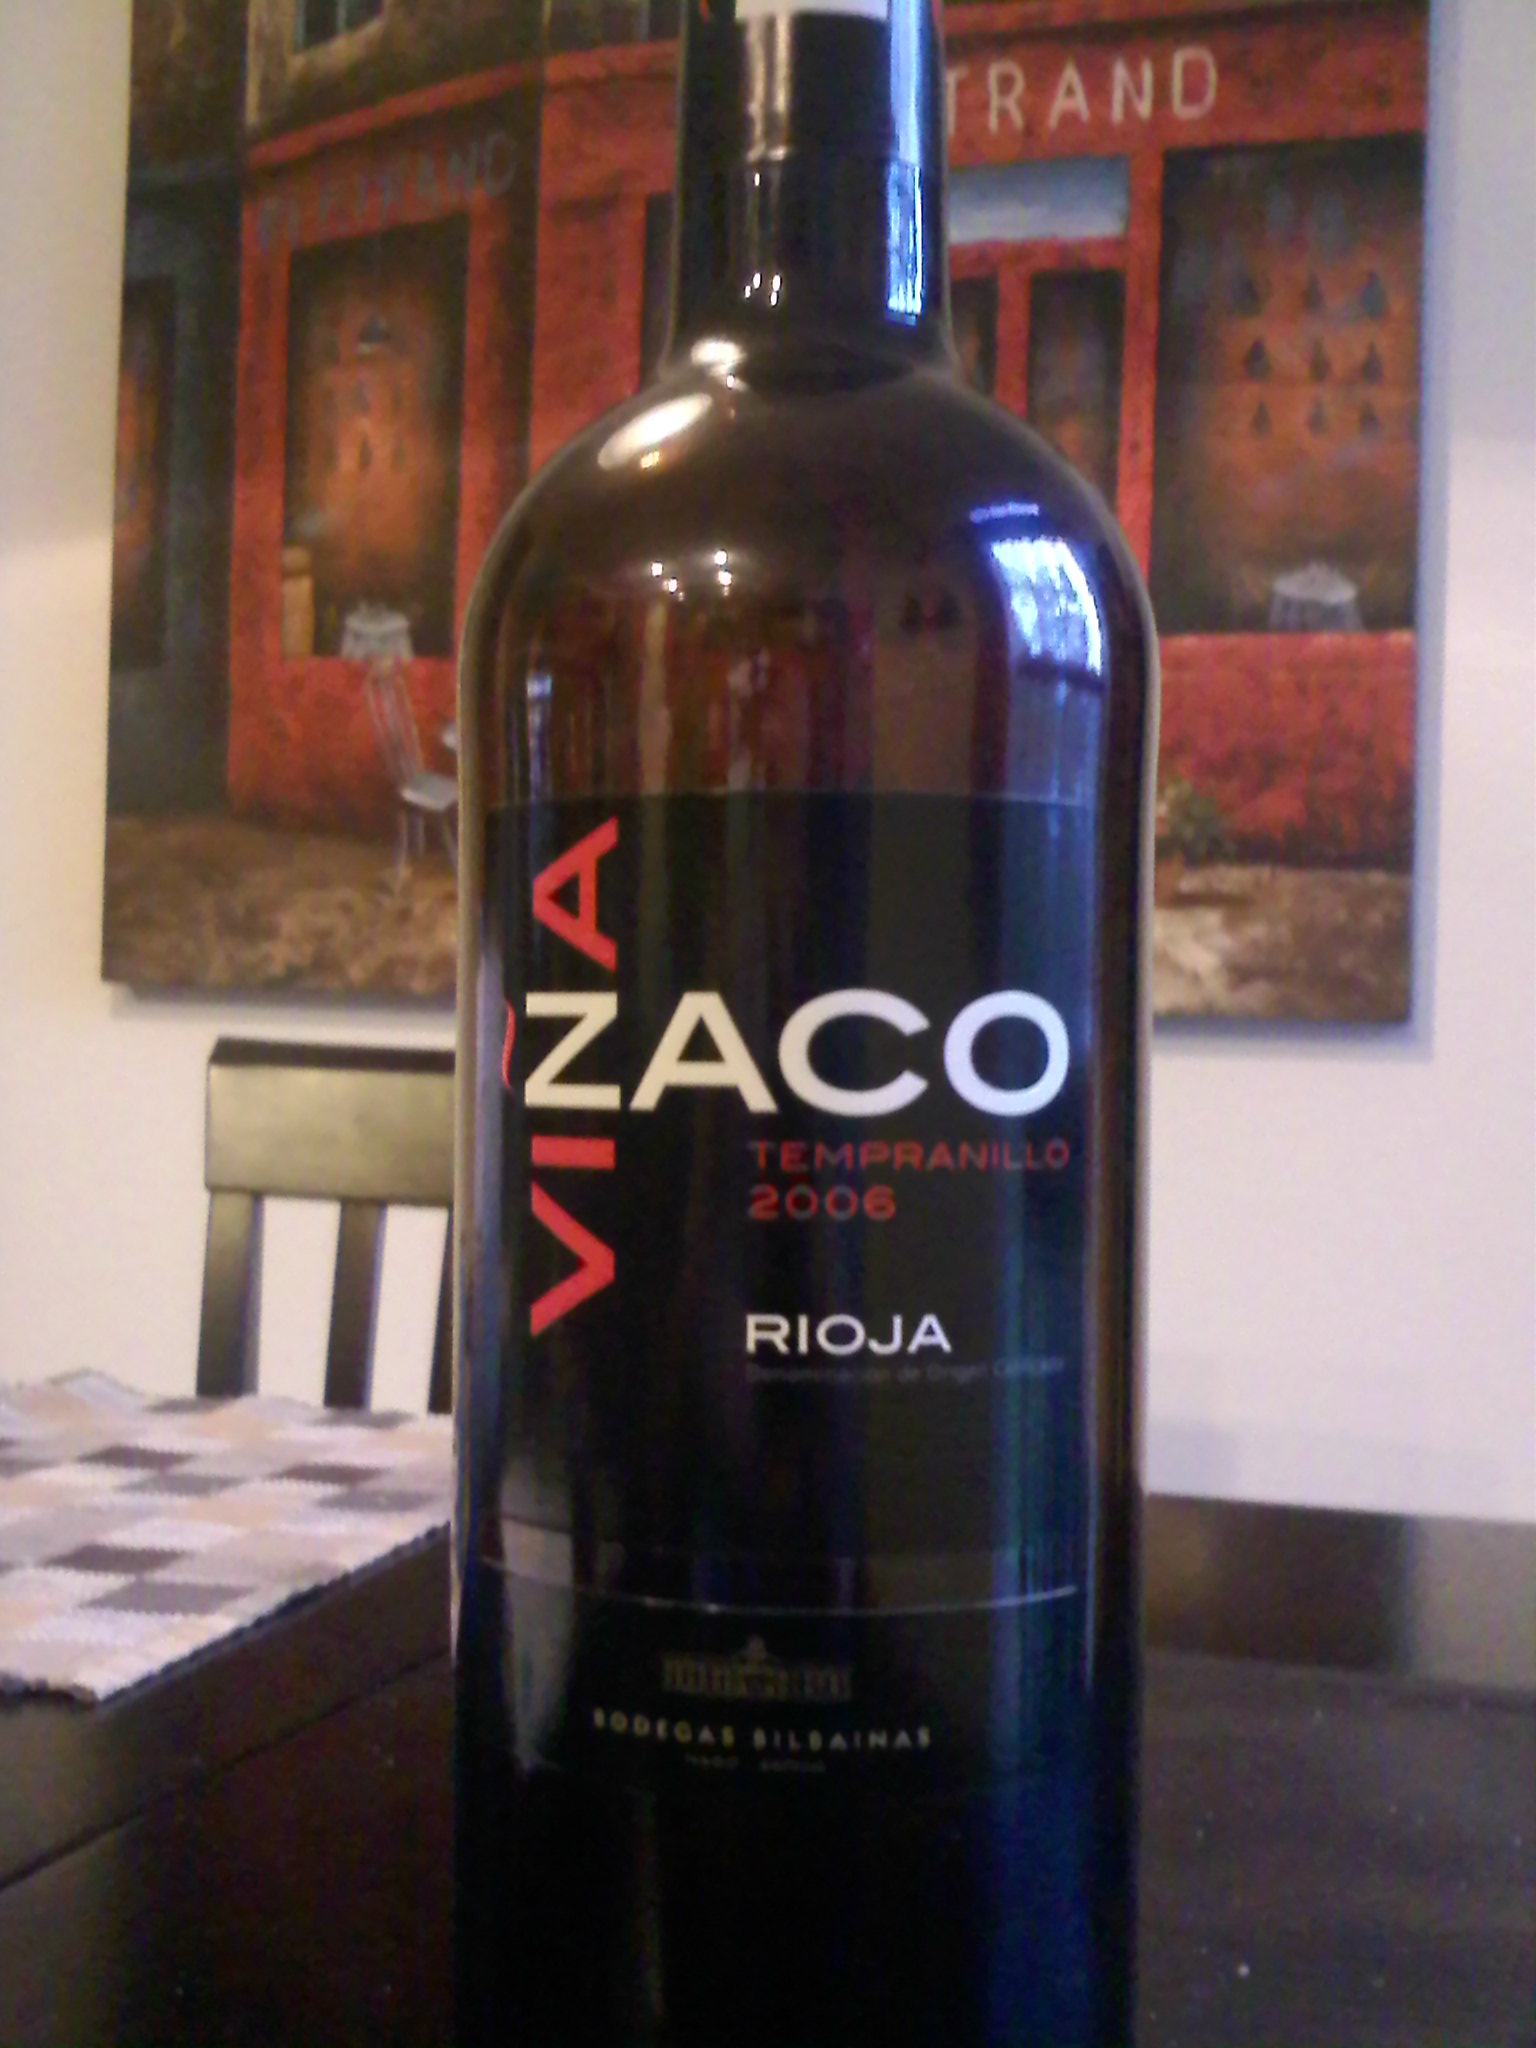 Vina-Zaco-Rioja-2006.jpg